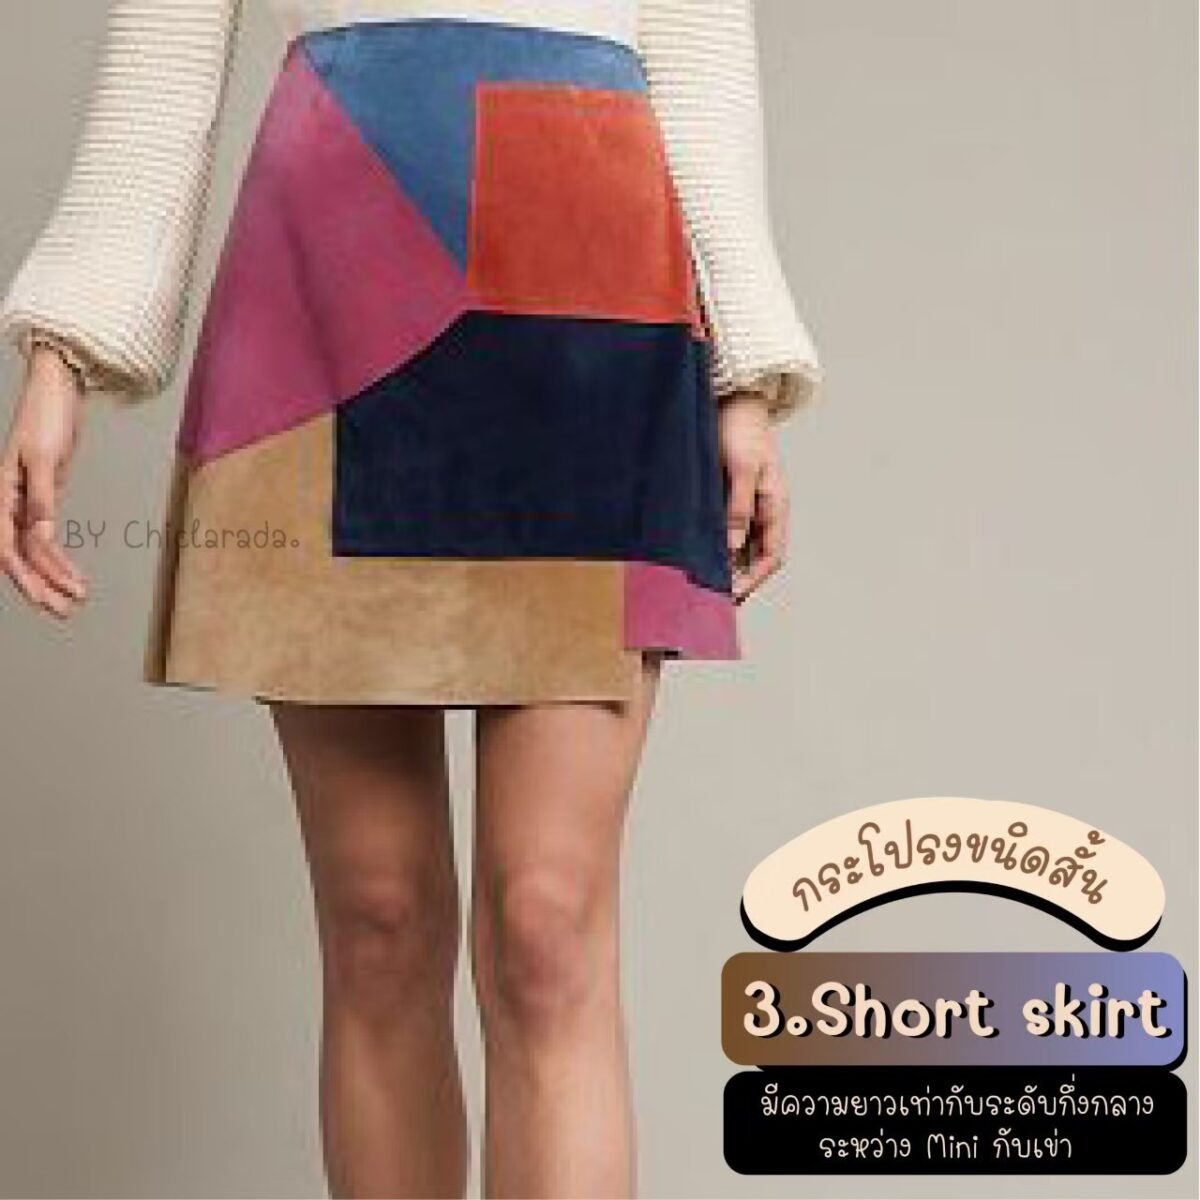 Short skirt คือ กระโปรงที่มีความยาวระดับกึ่งกลางระหว่าง mini กับเข่า